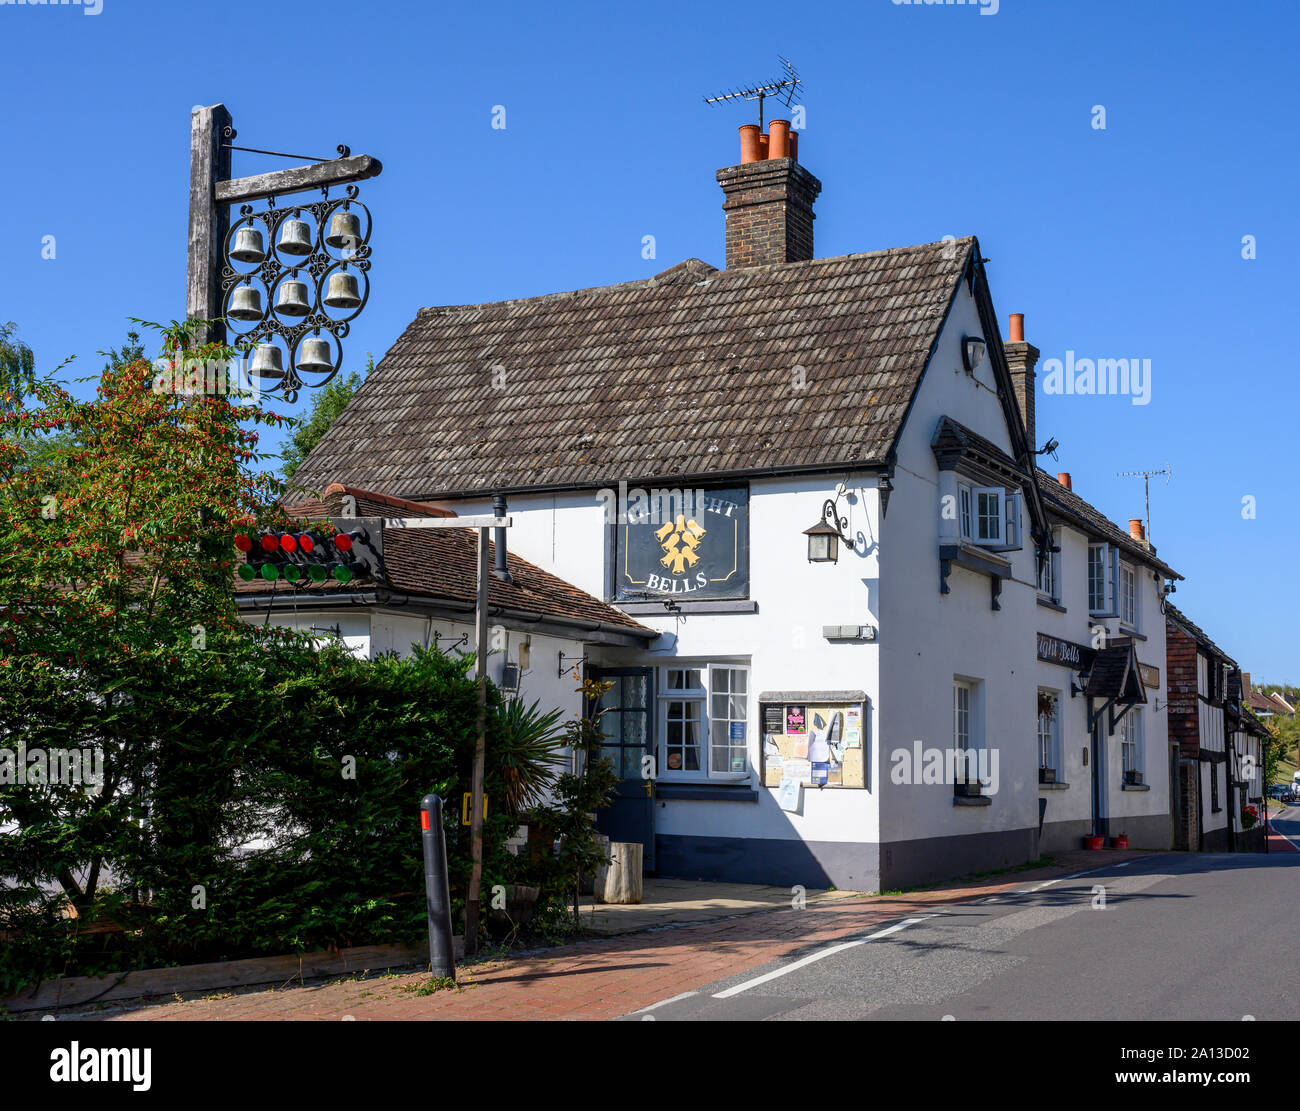 Las ocho campanas Public House, la calle Bolney, Haywards Heath, West Sussex, Inglaterra, Reino Unido. Foto de stock